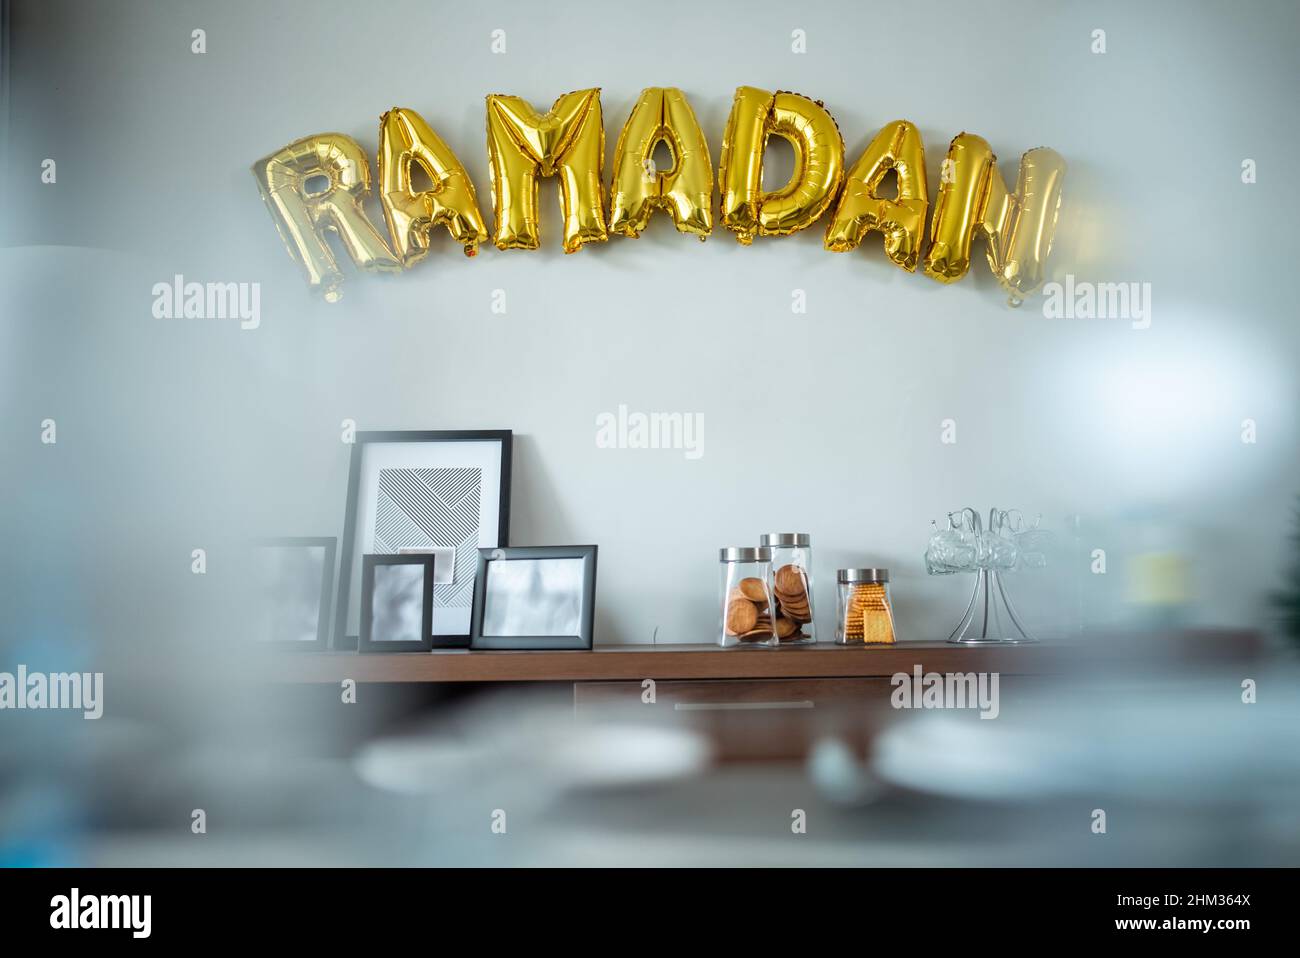 Ramadan gold balloon text on the wall Stock Photo